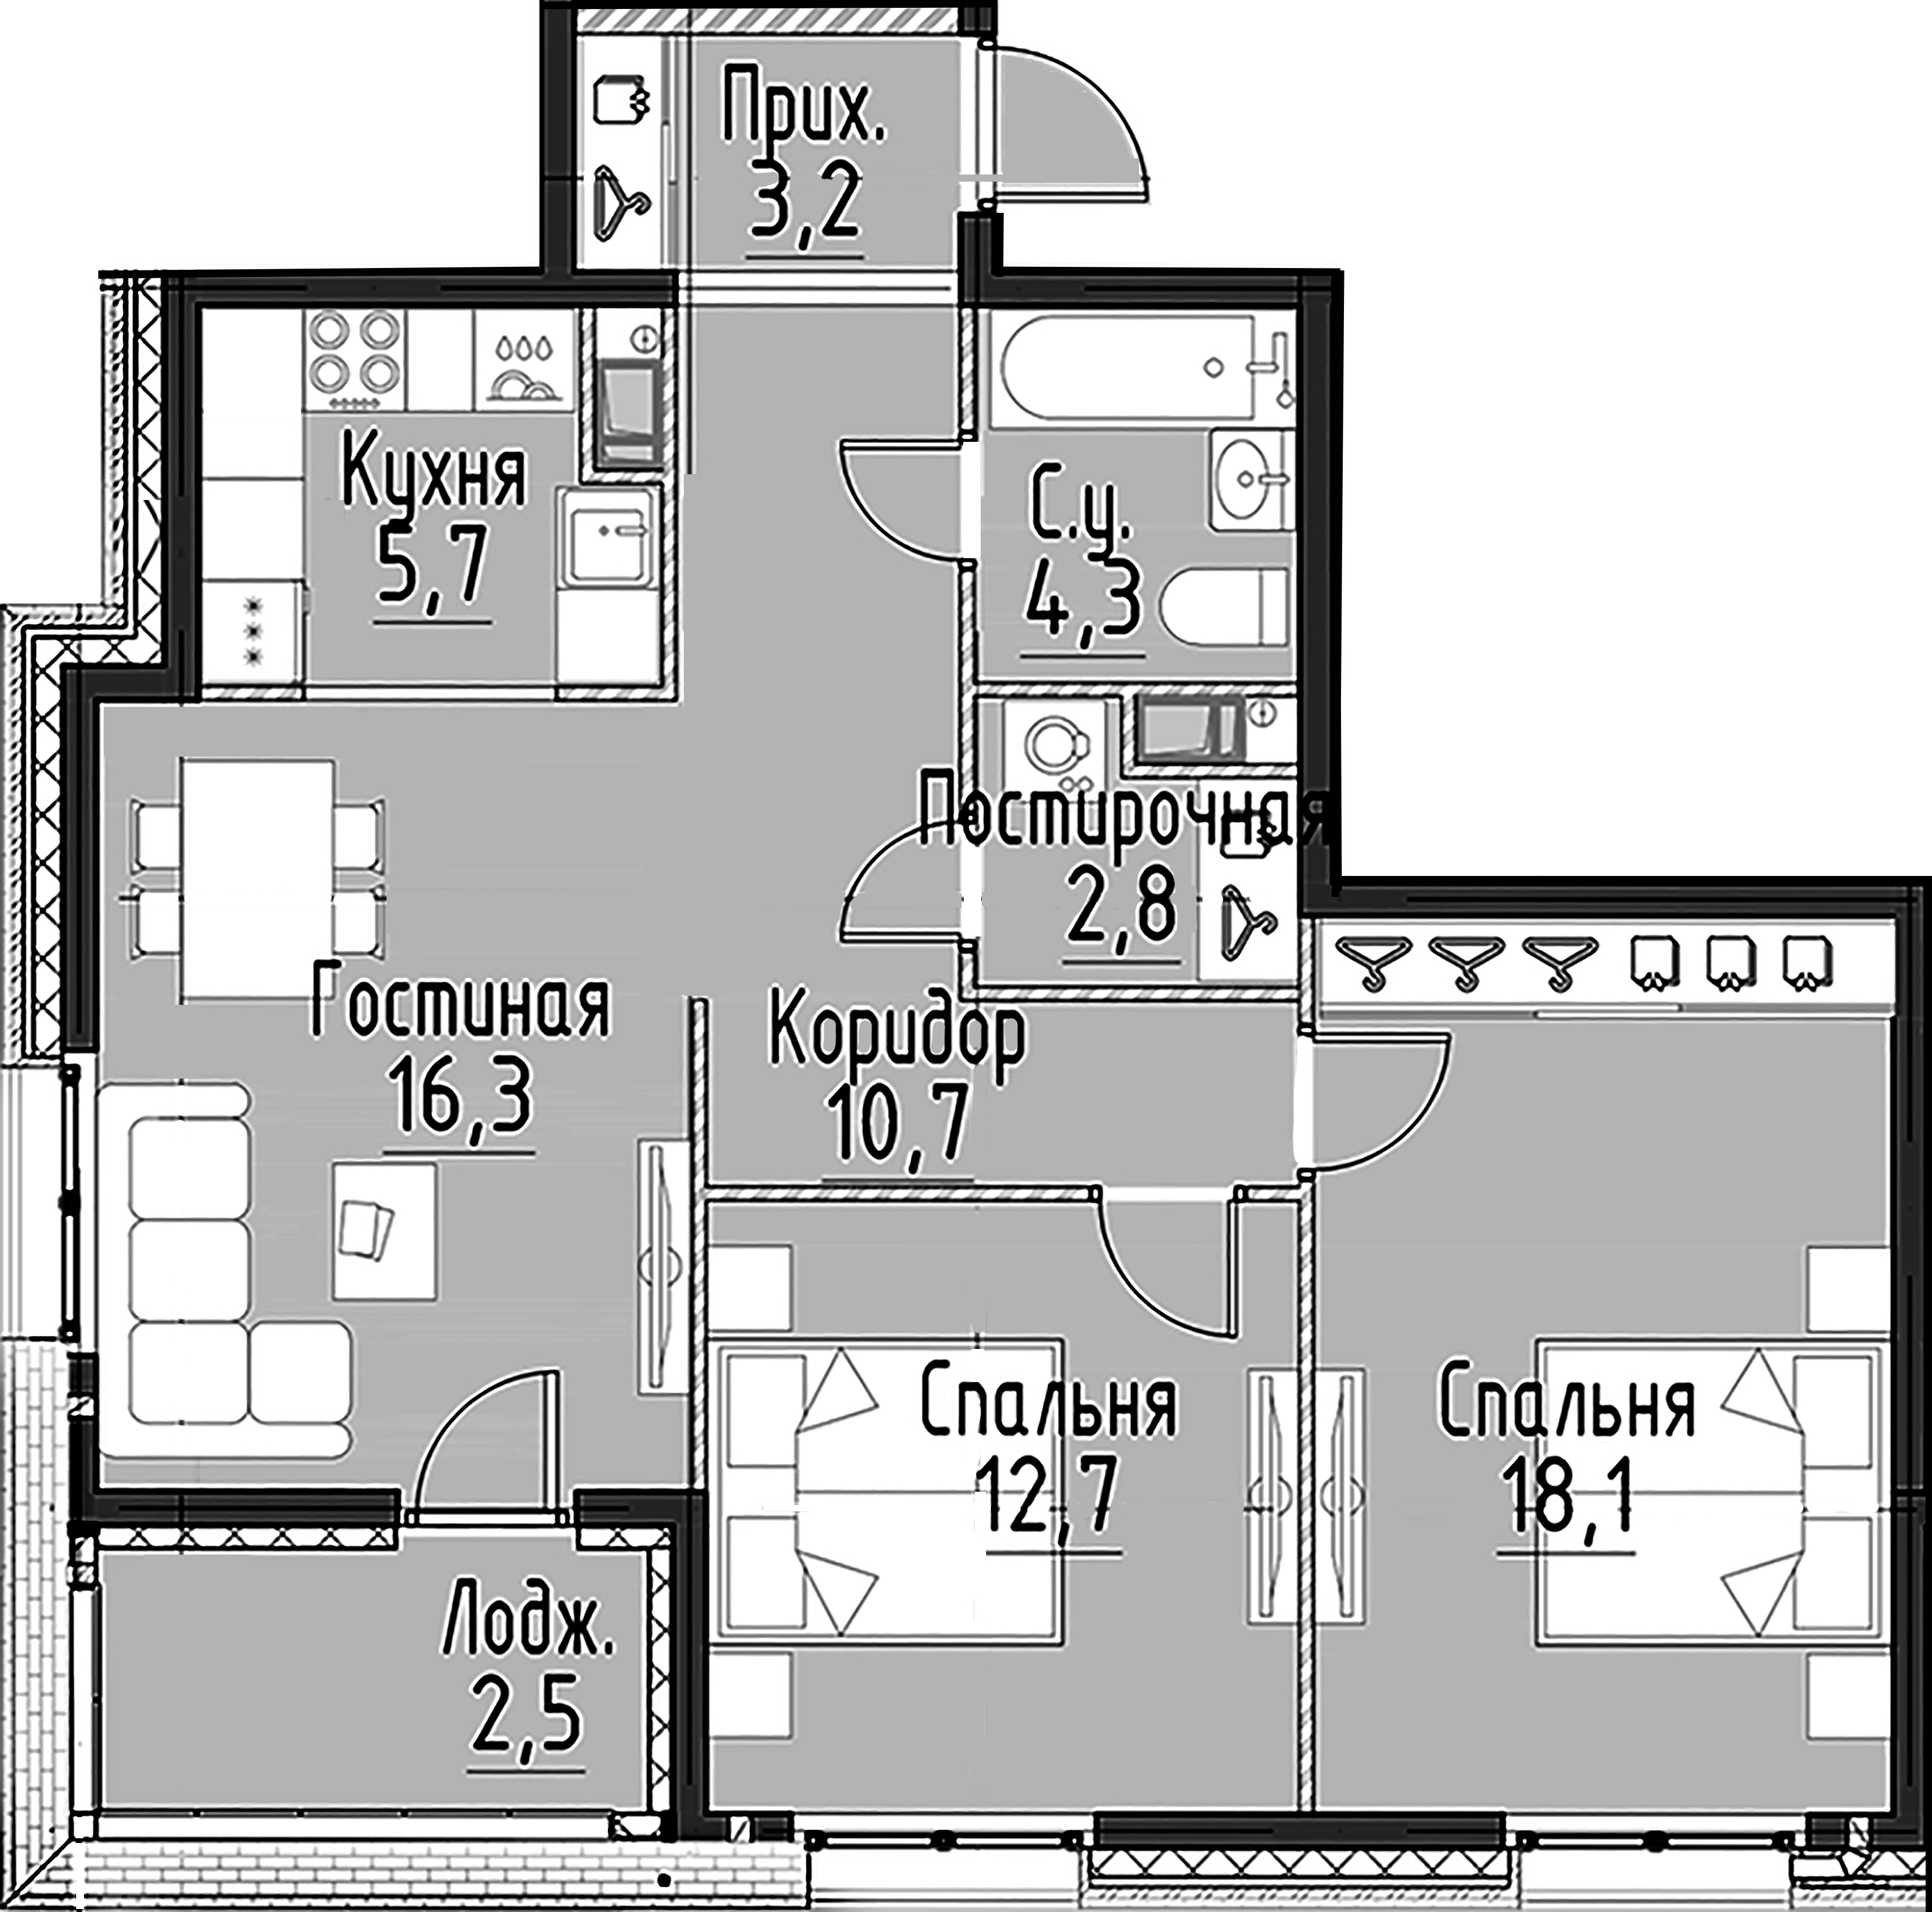 2-комнатная квартира  №113 в Моисеенко, 10: 73.7 м², этаж 4 - купить в Санкт-Петербурге